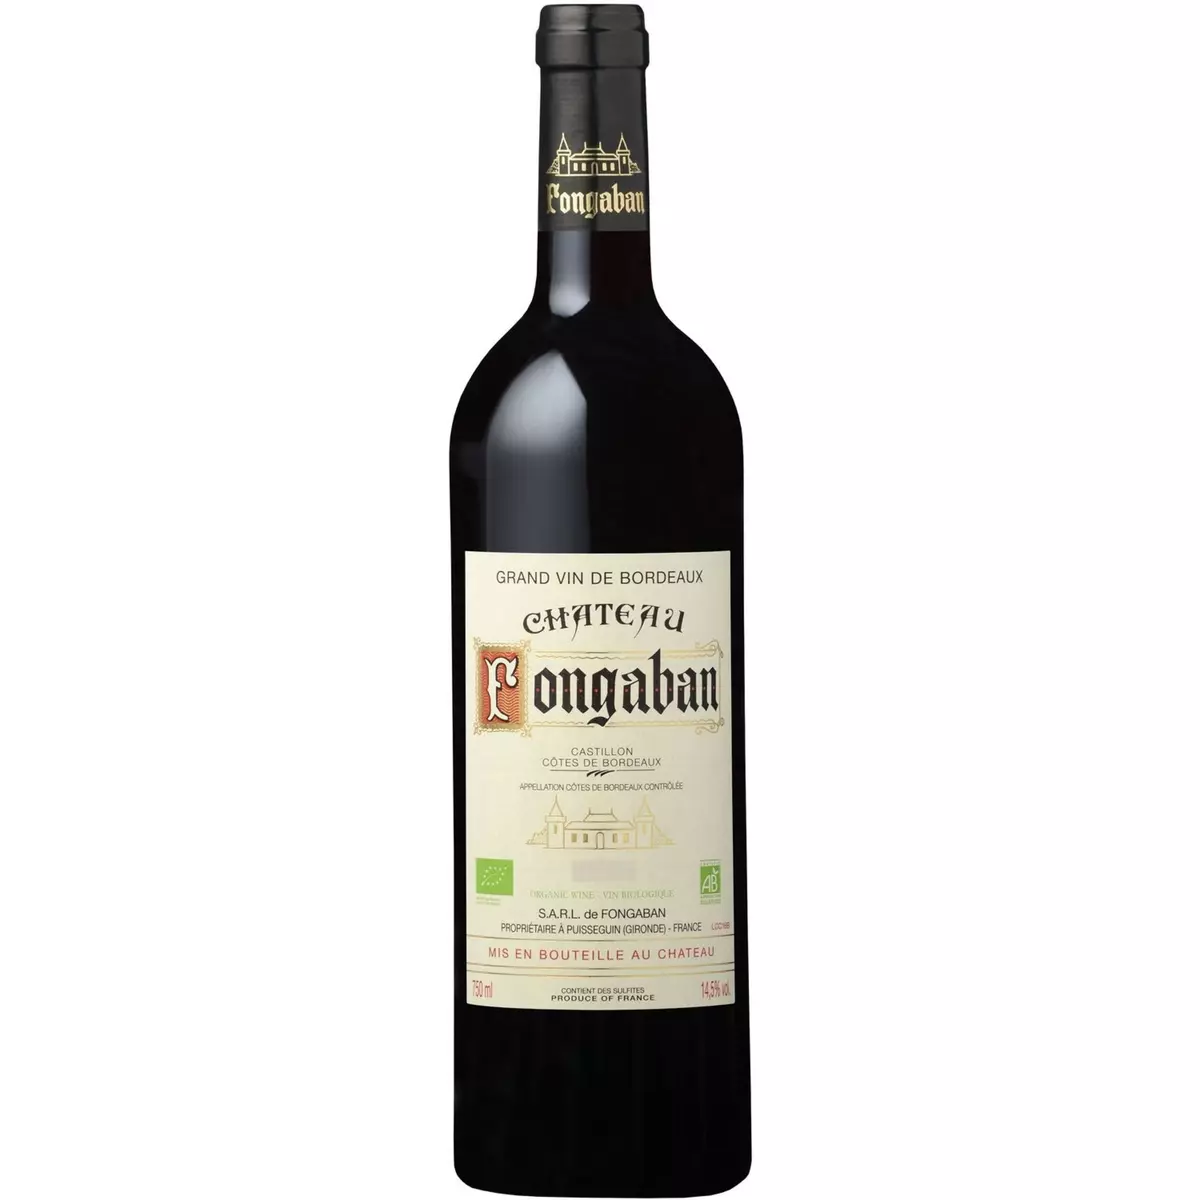 Vin rouge AOP Castillon Côtes de Bordeaux Château Fongaban bio 2018 75cl